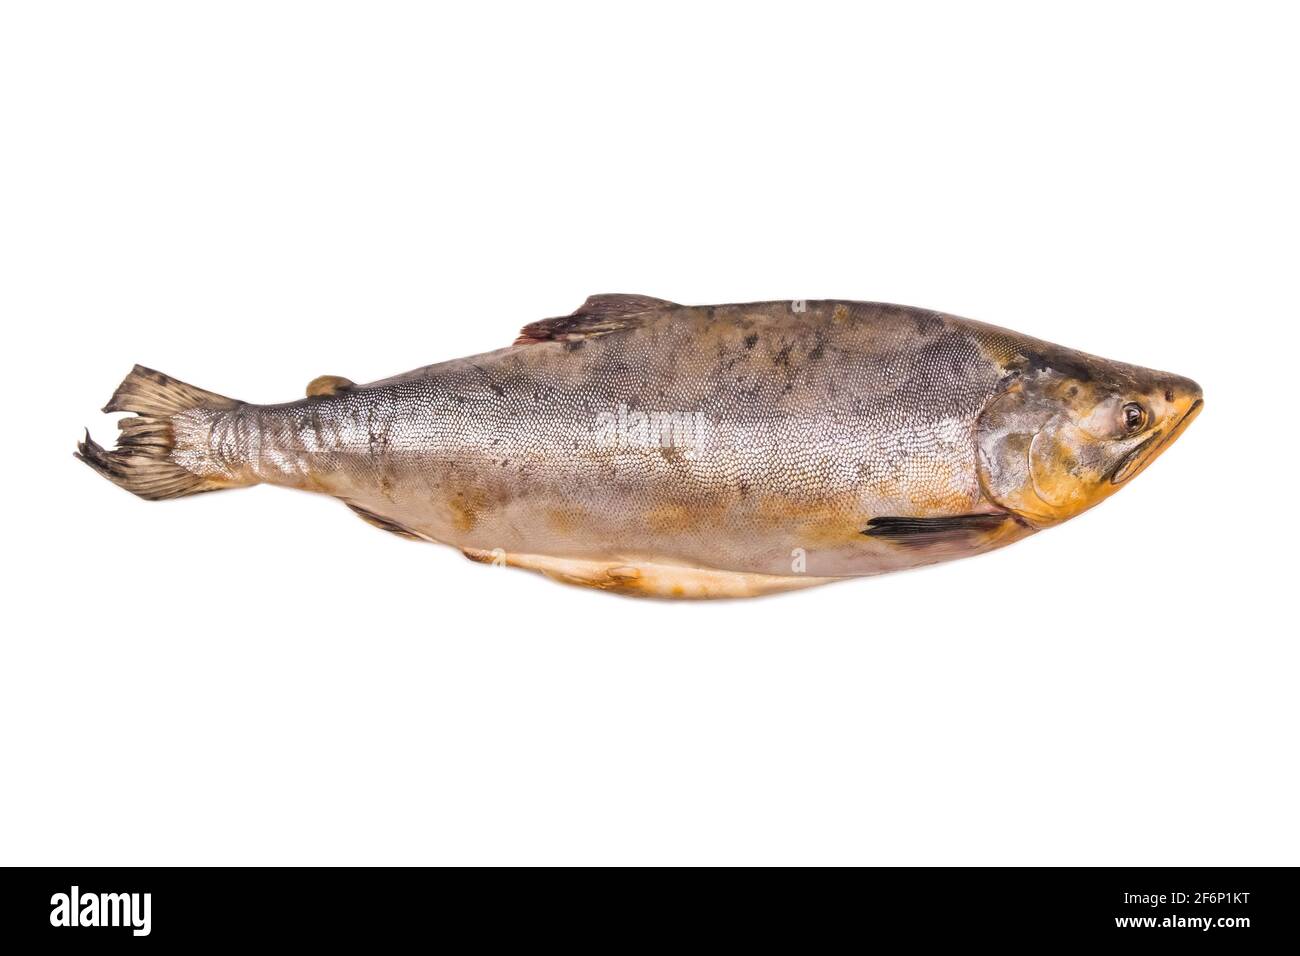 Vecchio pesce malsano di scarsa qualità isolato su fondo bianco, grasso sottocutaneo ossidato. Foto Stock